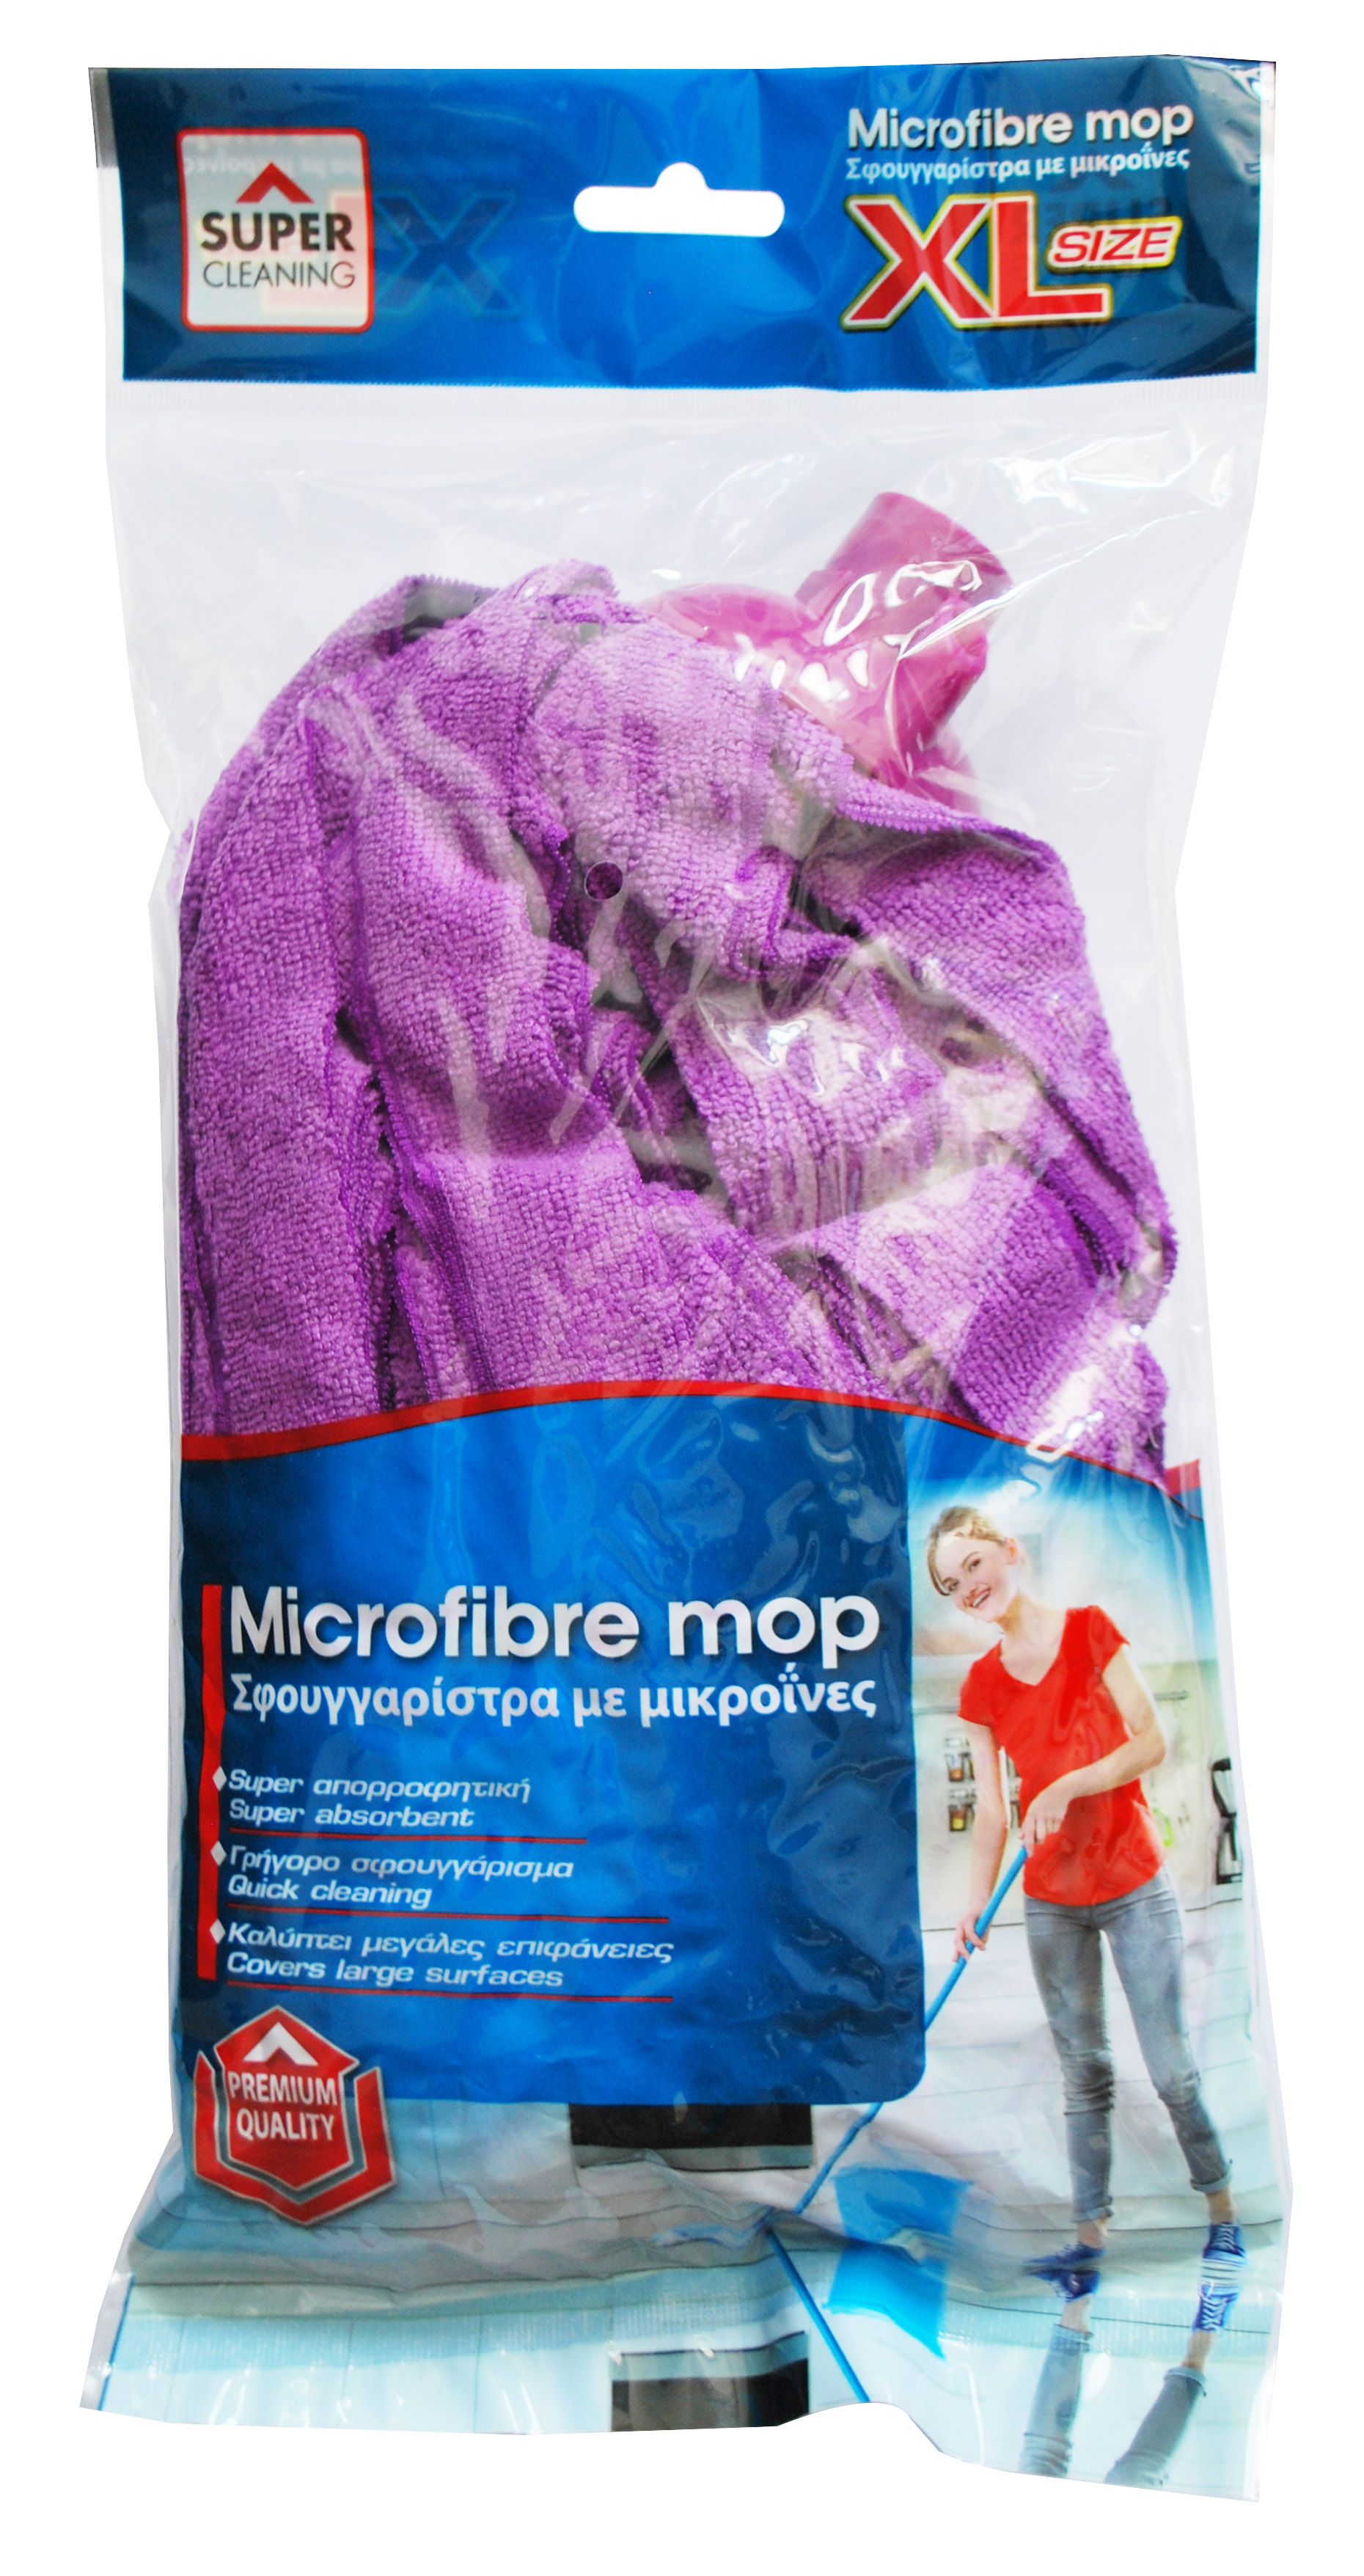 SUPER MICROFIBRE MOP XL 